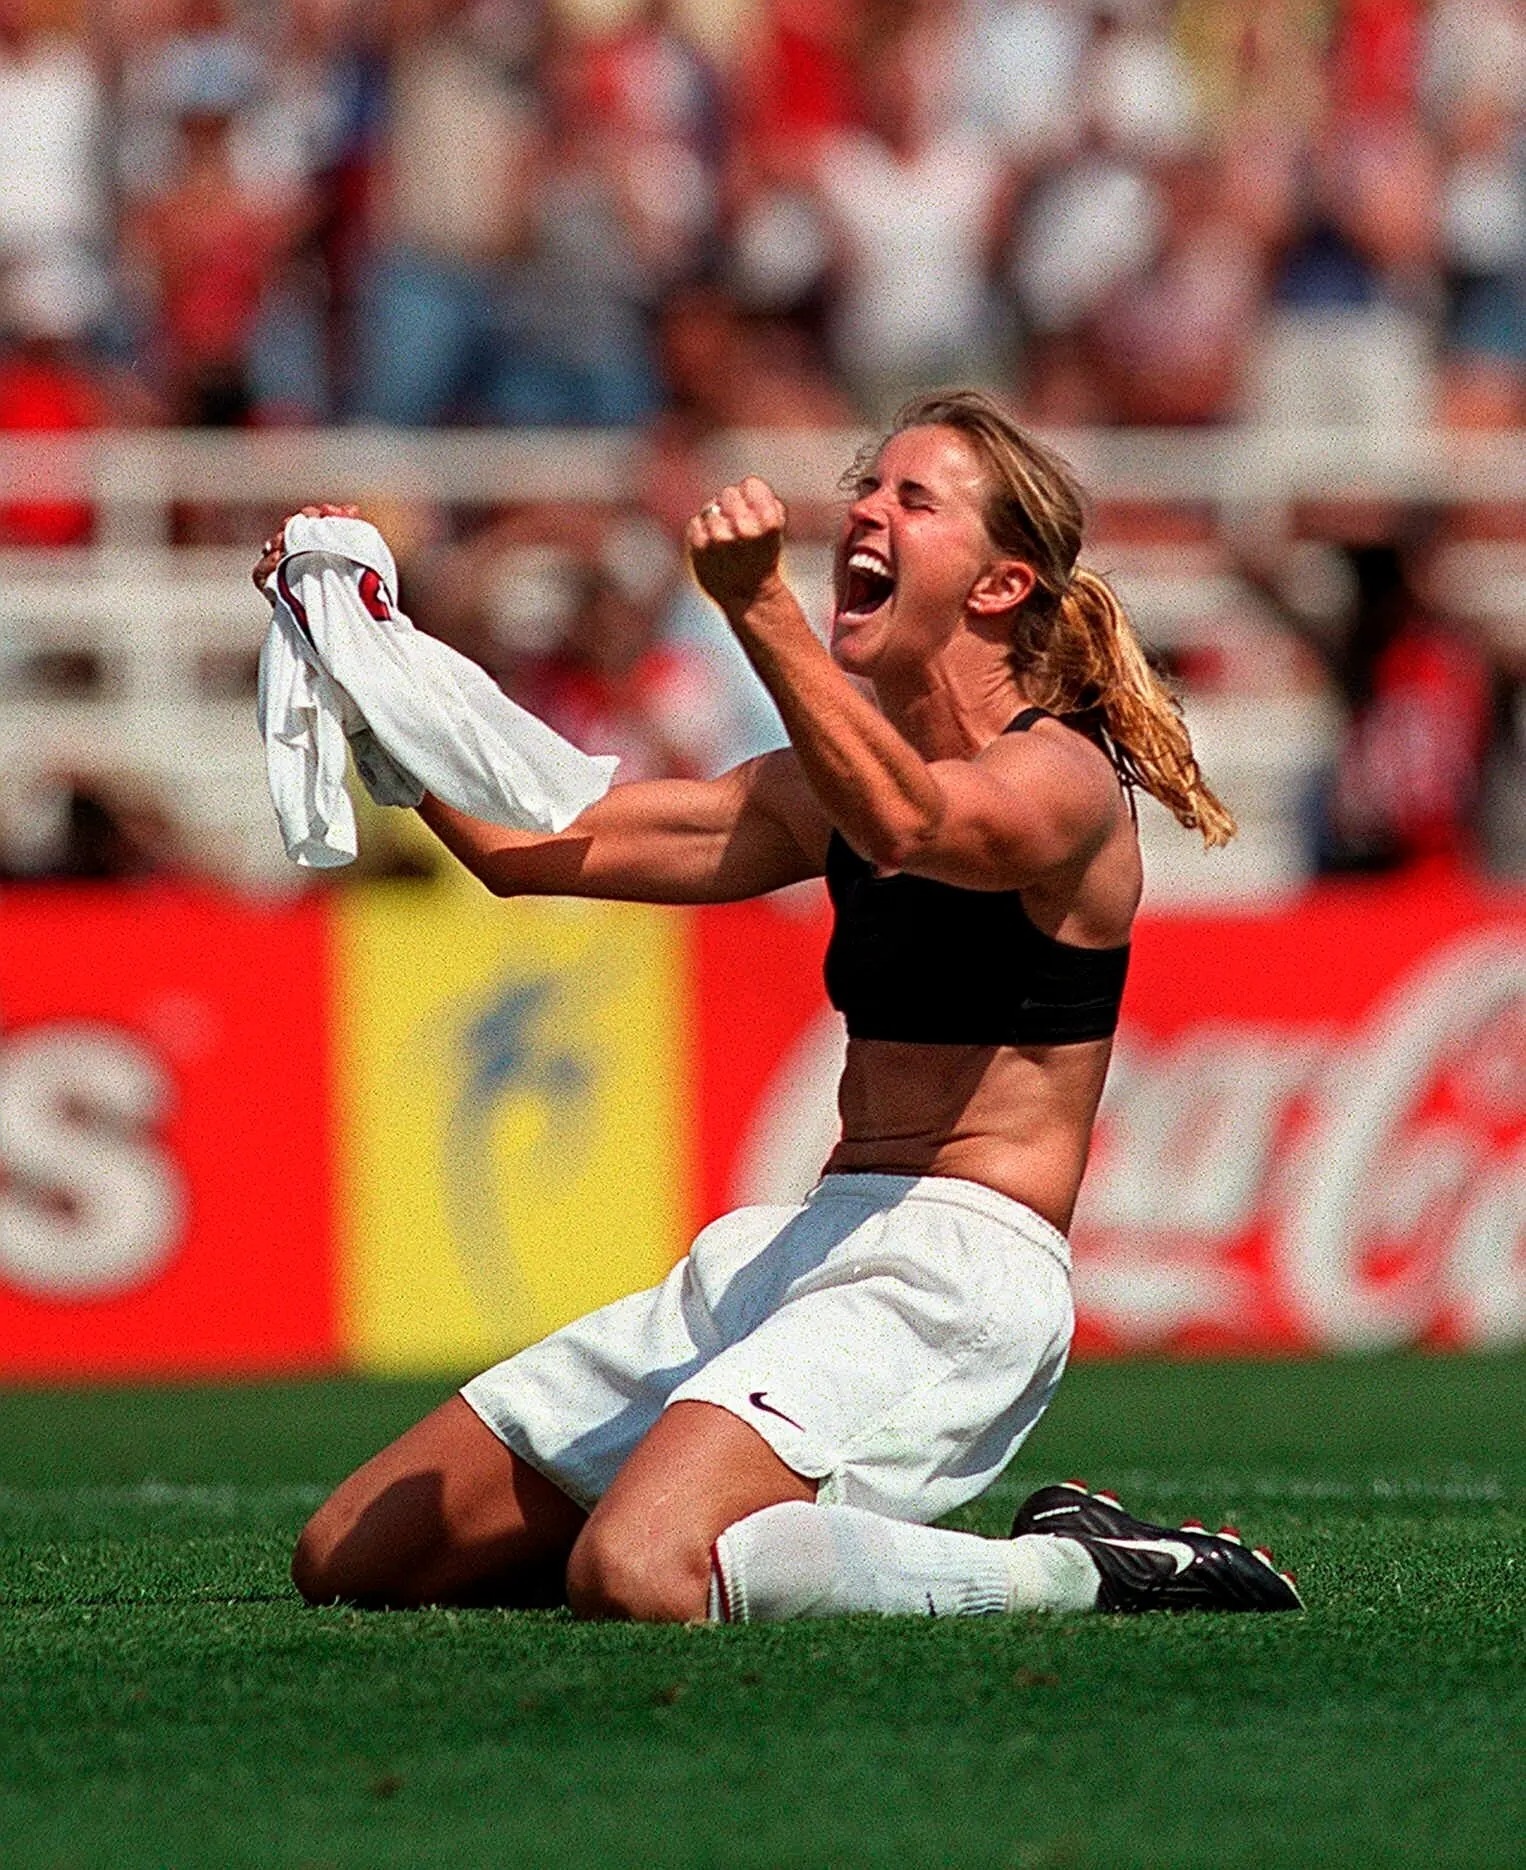 Nữ cầu thủ... cởi áo mừng bàn thắng: 2 khoảnh khắc lịch sử của nữ quyền - 2